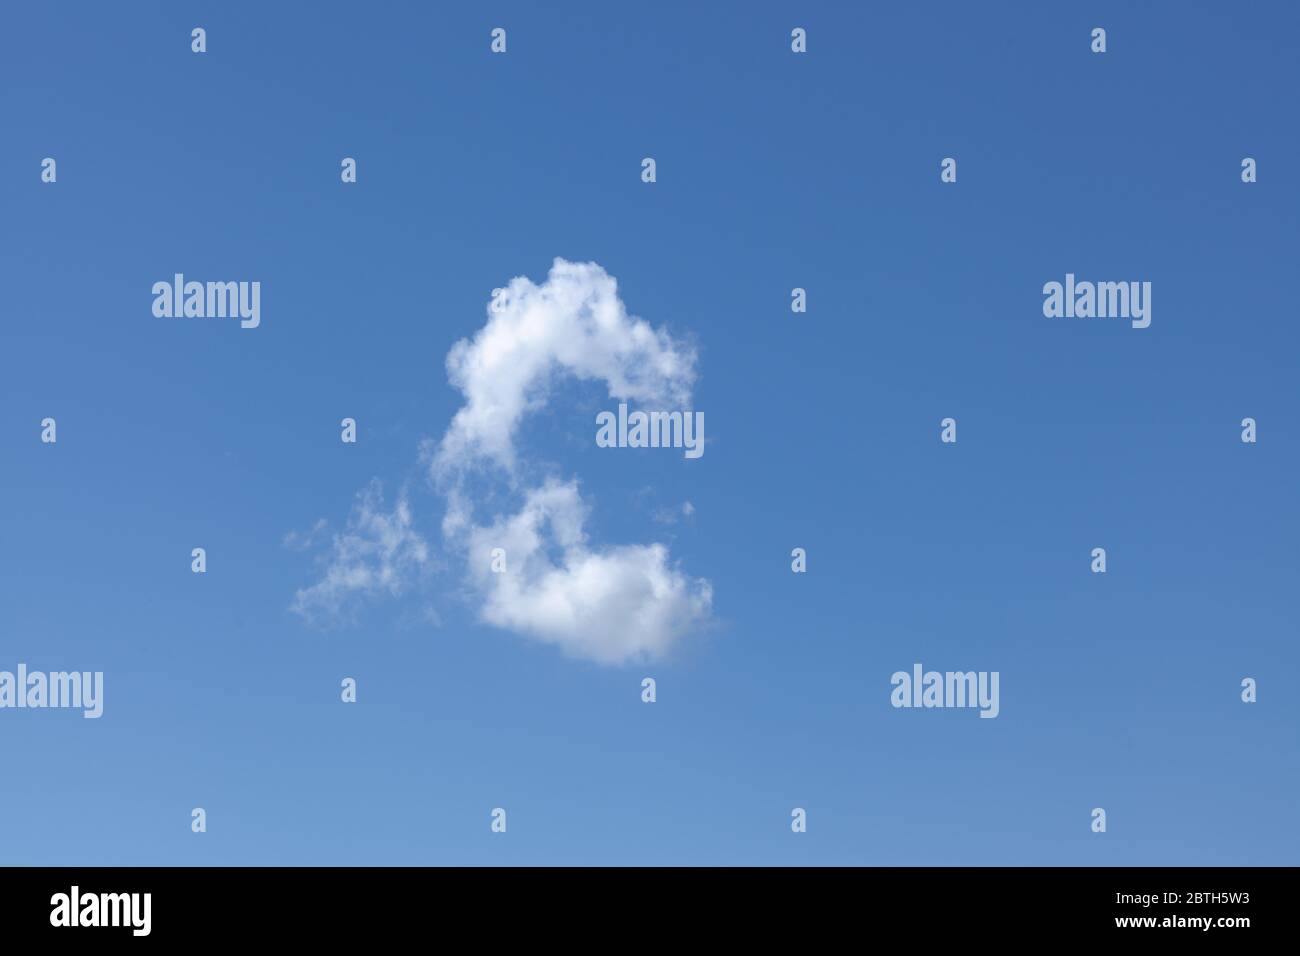 Eine weiße wispy Wolke in einem schönen blauen Himmel Hintergrund. Blick auf die Wolkenlandschaft an einem klaren Tag. Stockfoto